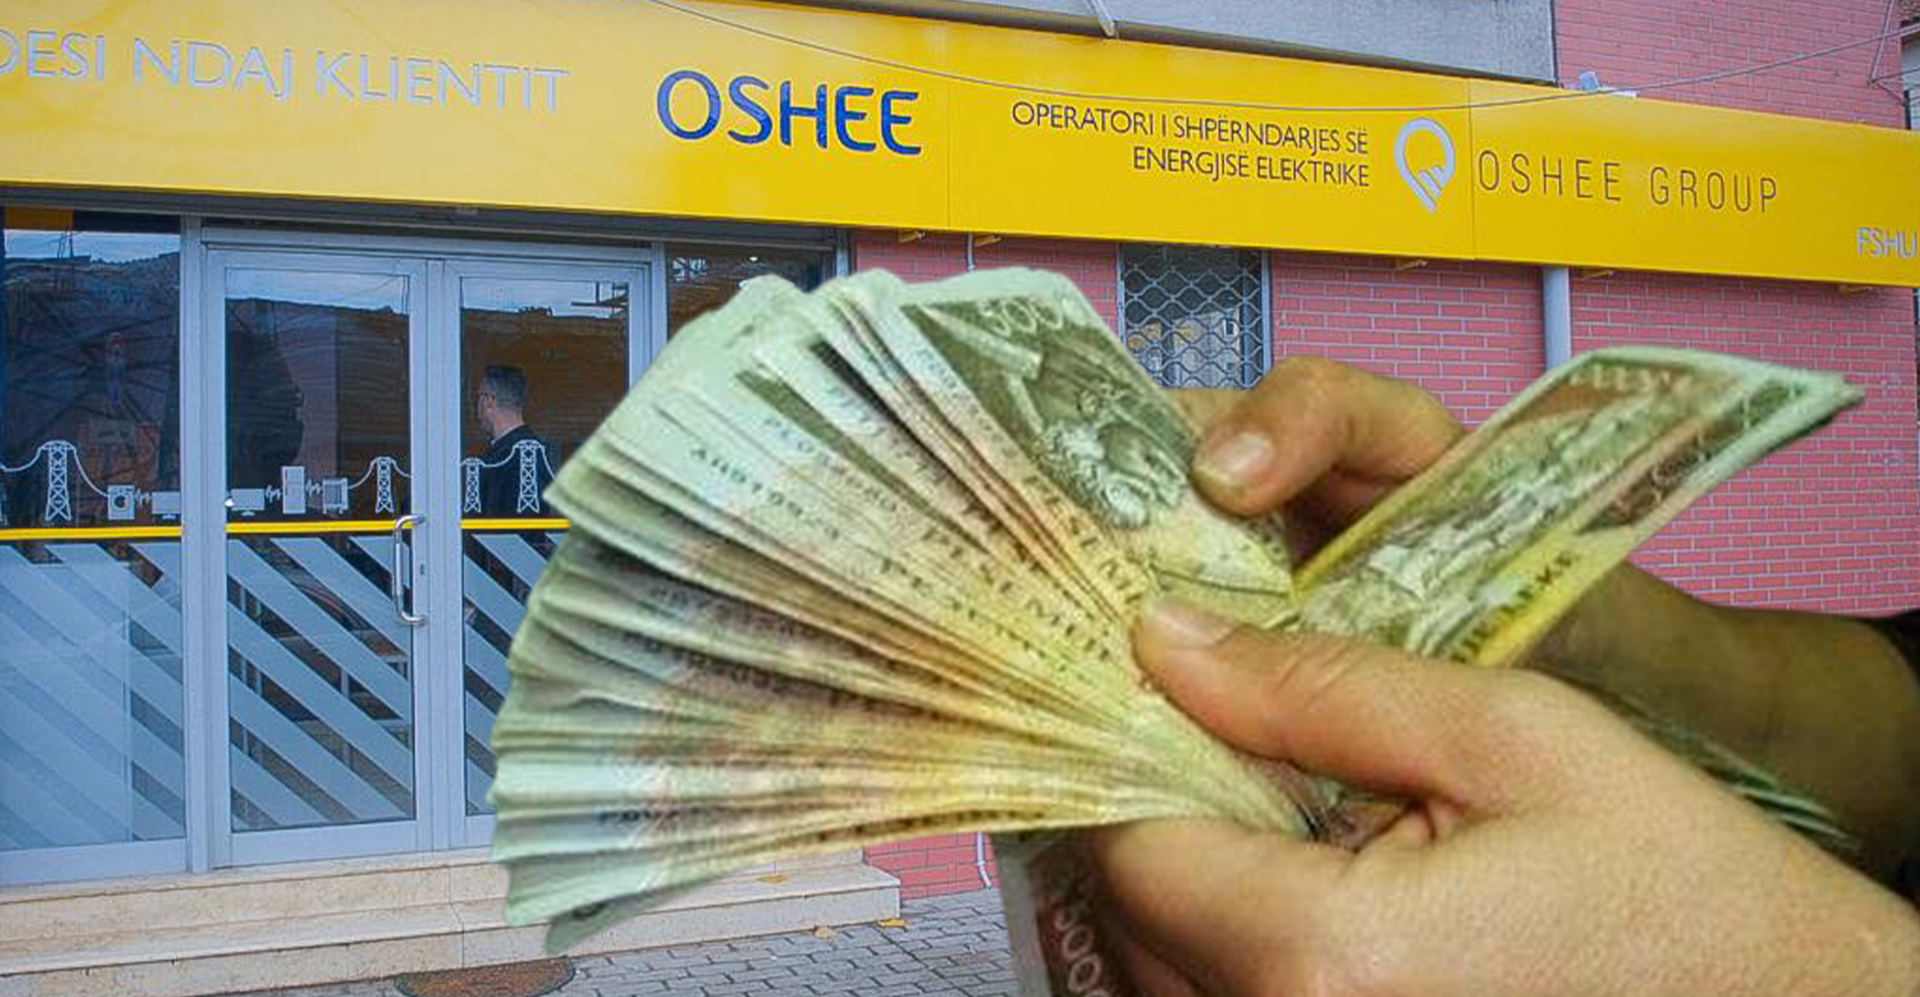 Punonjësi i OSHEE: Na u premtua paga e 13-të për fundvit, por nuk e morëm!